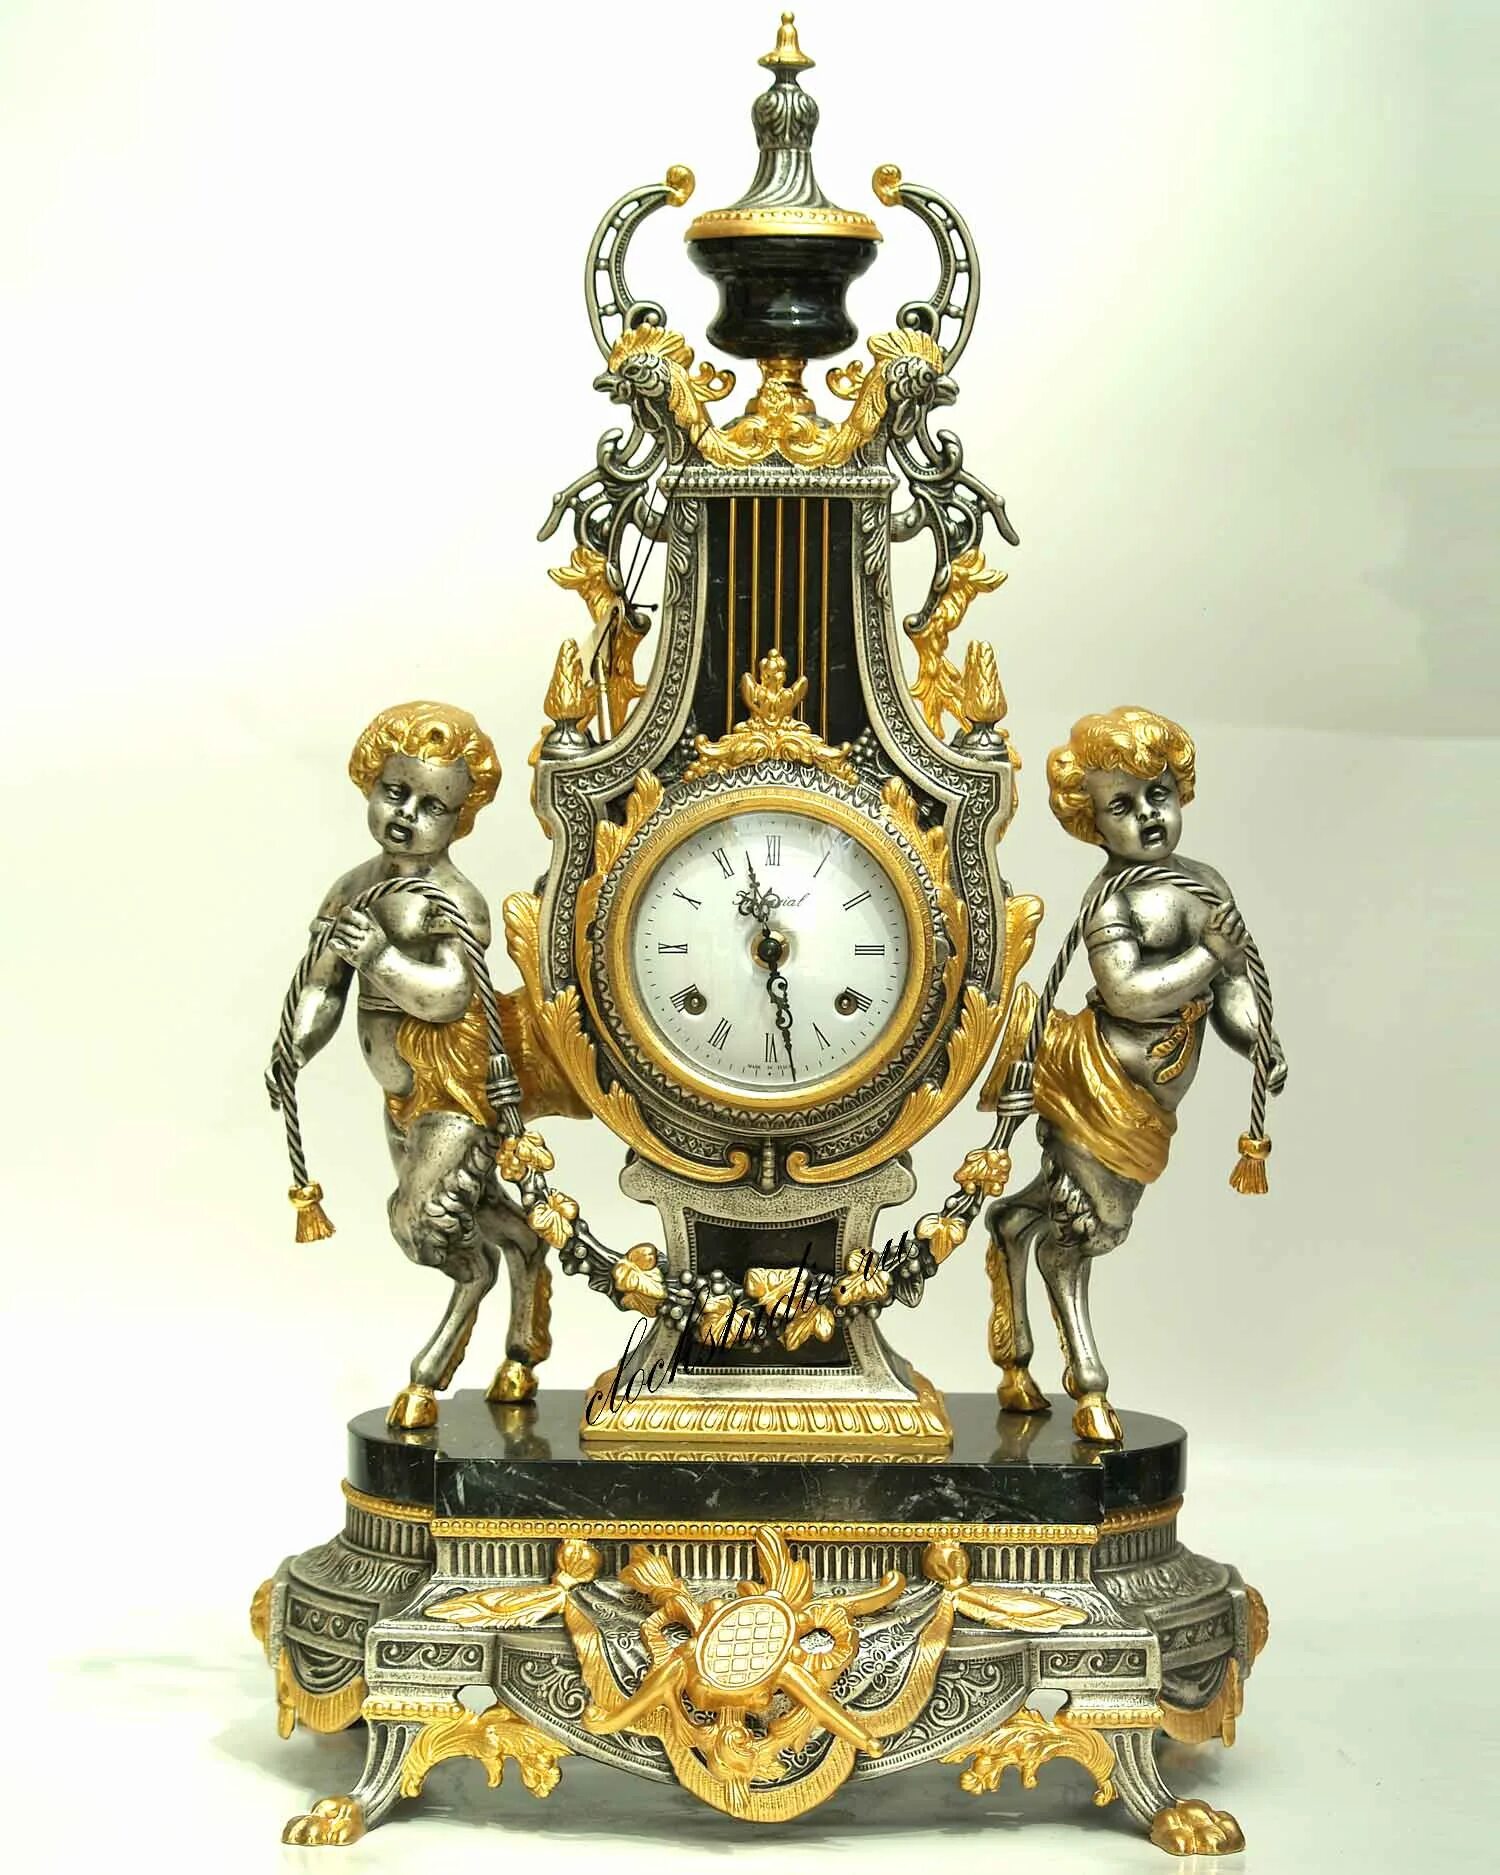 Италия часовой. Часы каминные Farbel Imperial. Каминные часы Farbel Imperial Италия. Farbel Imperial часы Italy. Часы каминные rue Amelot 26.